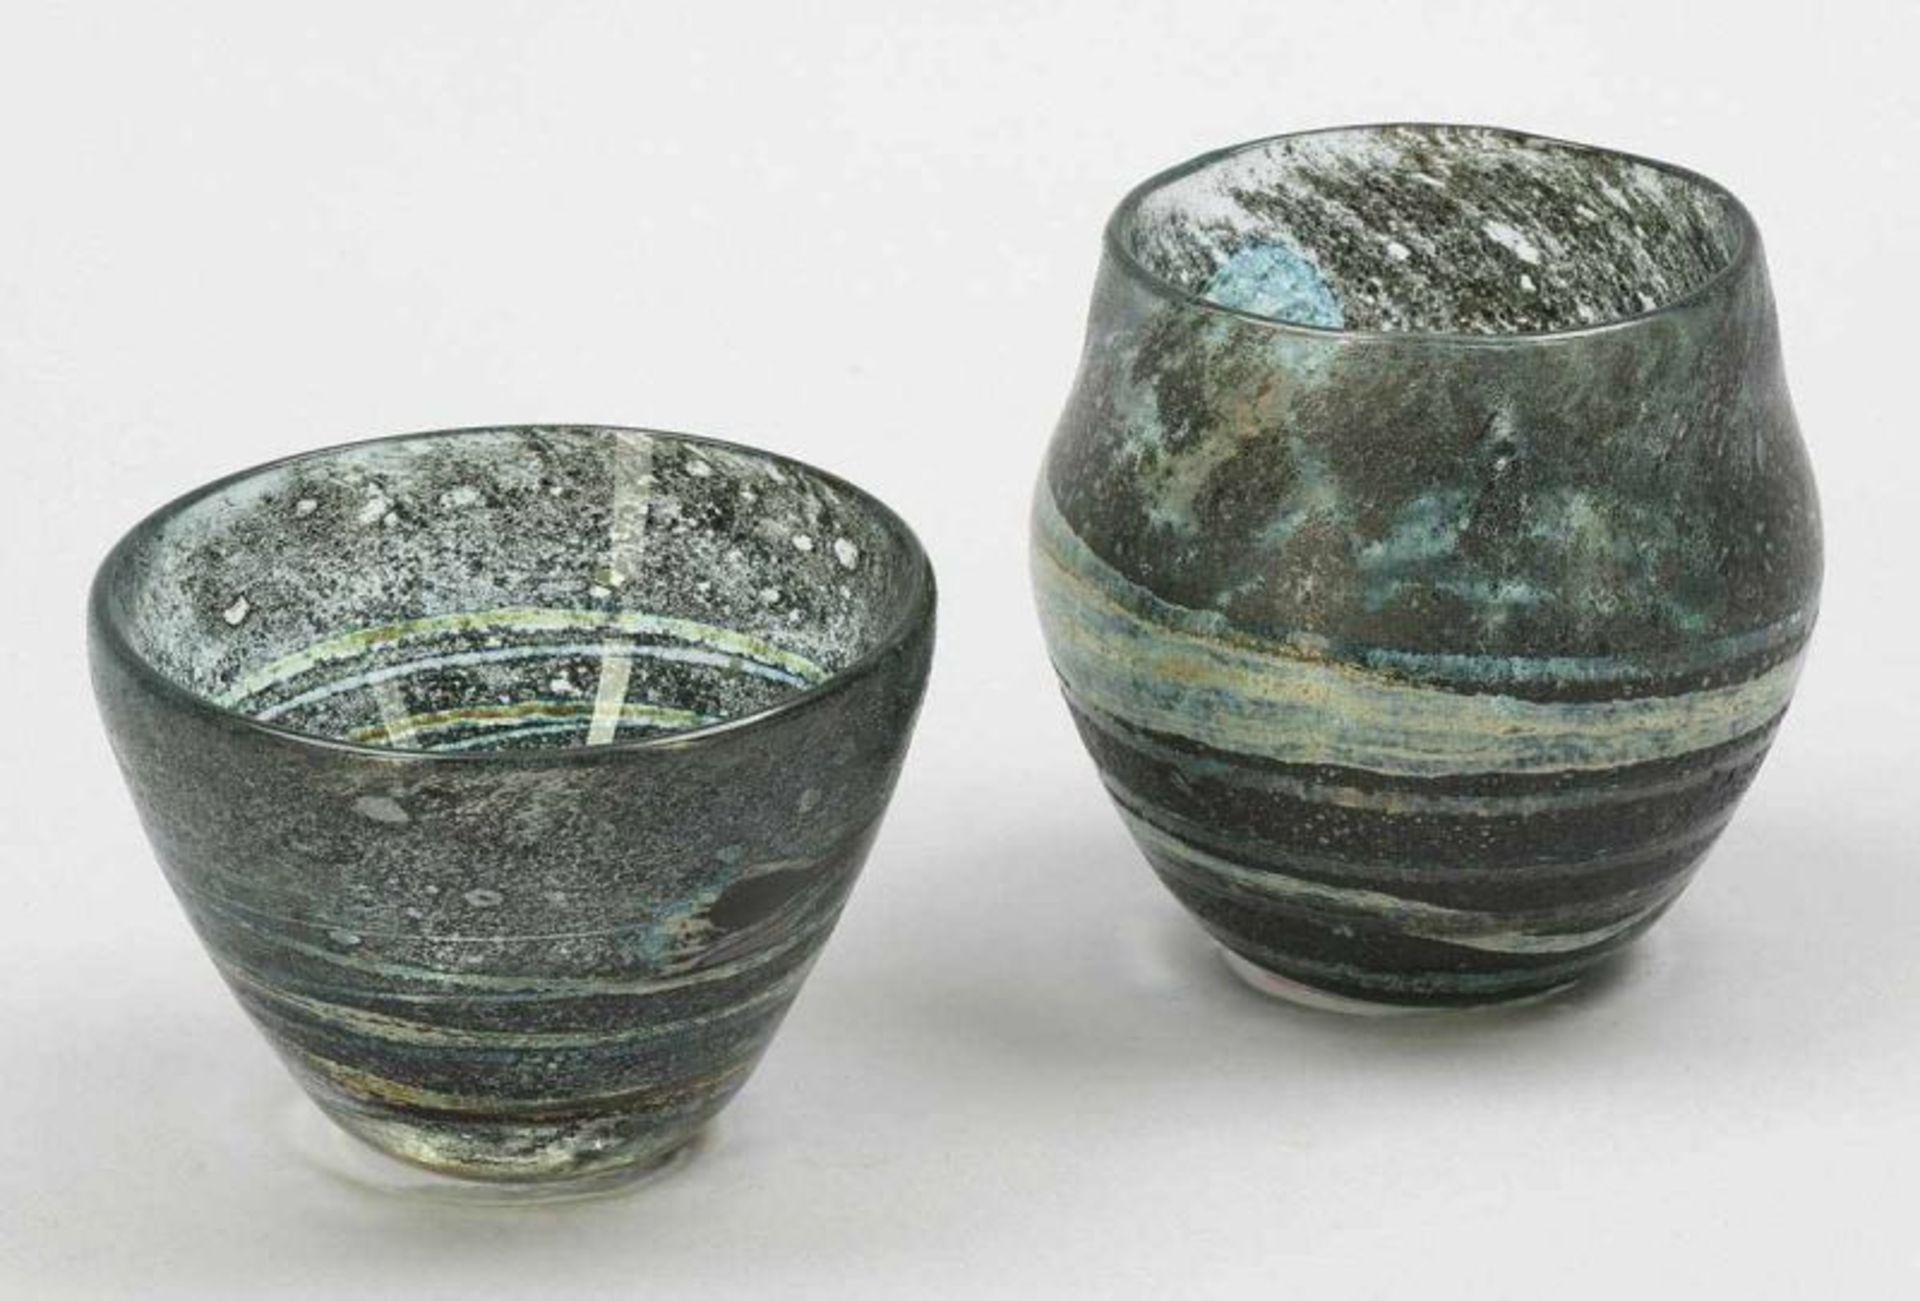 Schale und Vase Aleppo Technik Milan Vobruba, 1979. Farbloses Glas mit unregelmäßigen - Bild 2 aus 2